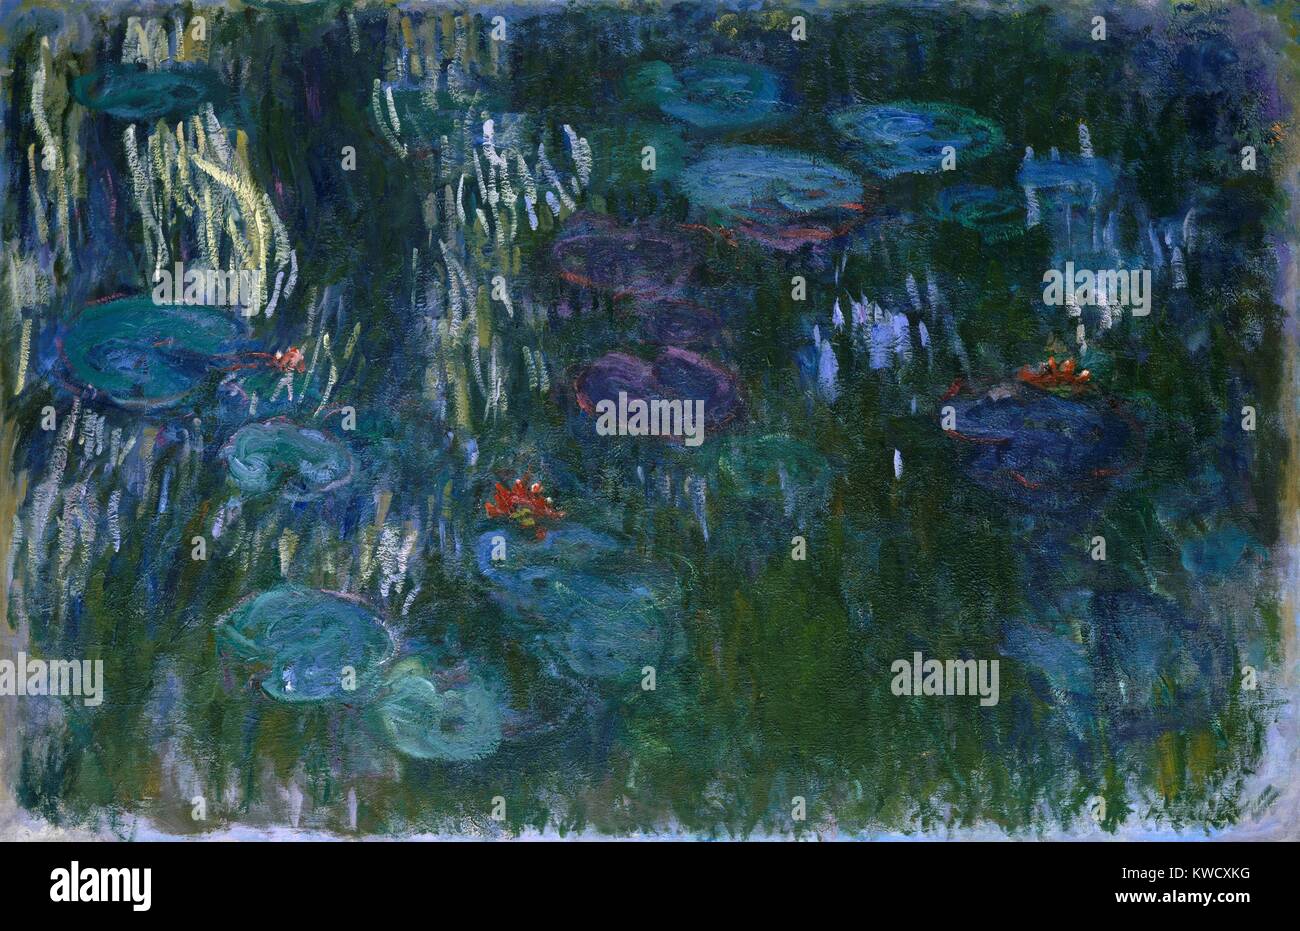 Water Lilies, par Claude Monet, 1916-19, la peinture impressionniste français, huile sur toile. Dans sa dernière décennie, Monet nympheas peints dans un style fluide, gratuitement (BSLOC 2017 3 50) Banque D'Images